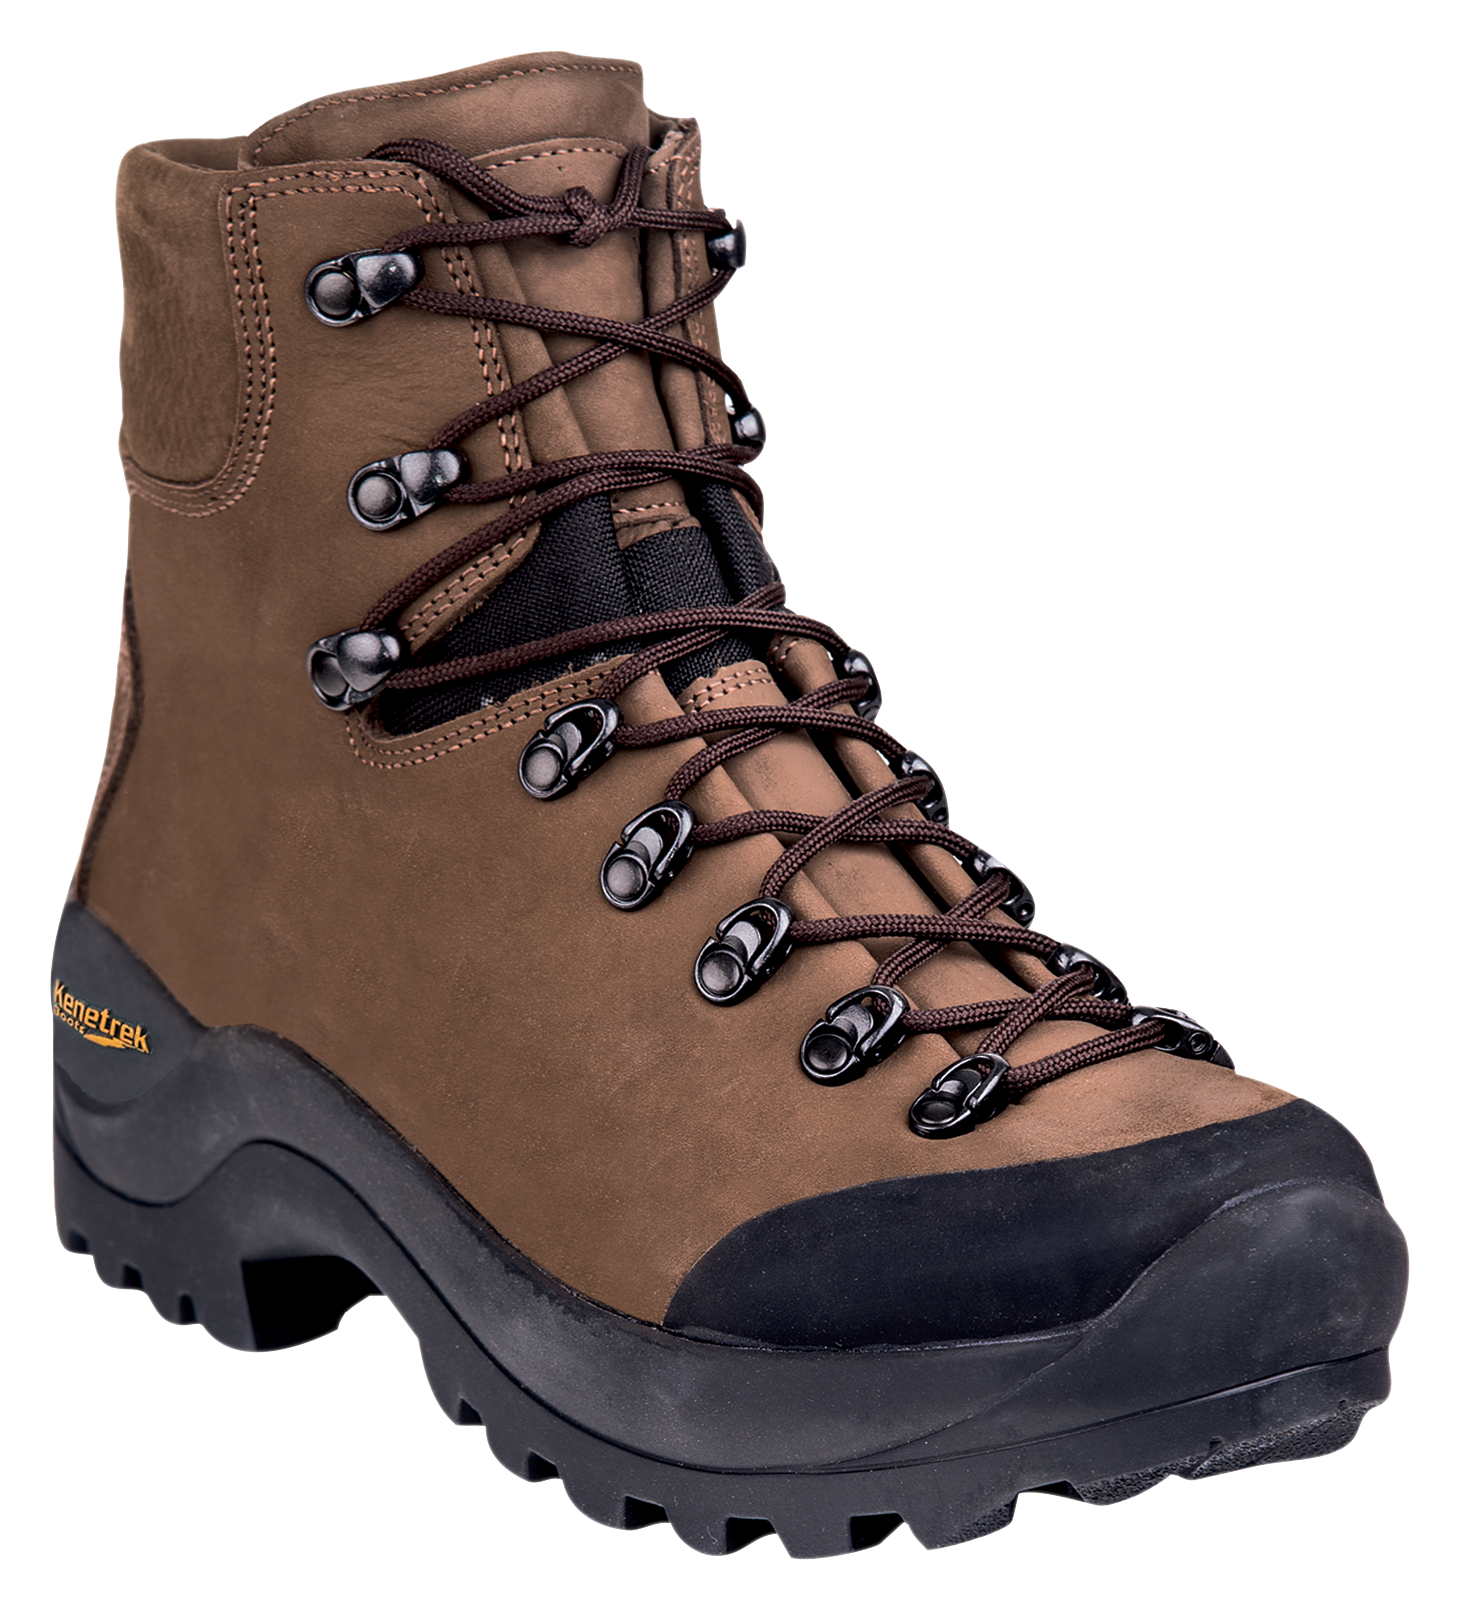 Kenetrek Desert Guide Hunting Boots for Men - Brown - 12M